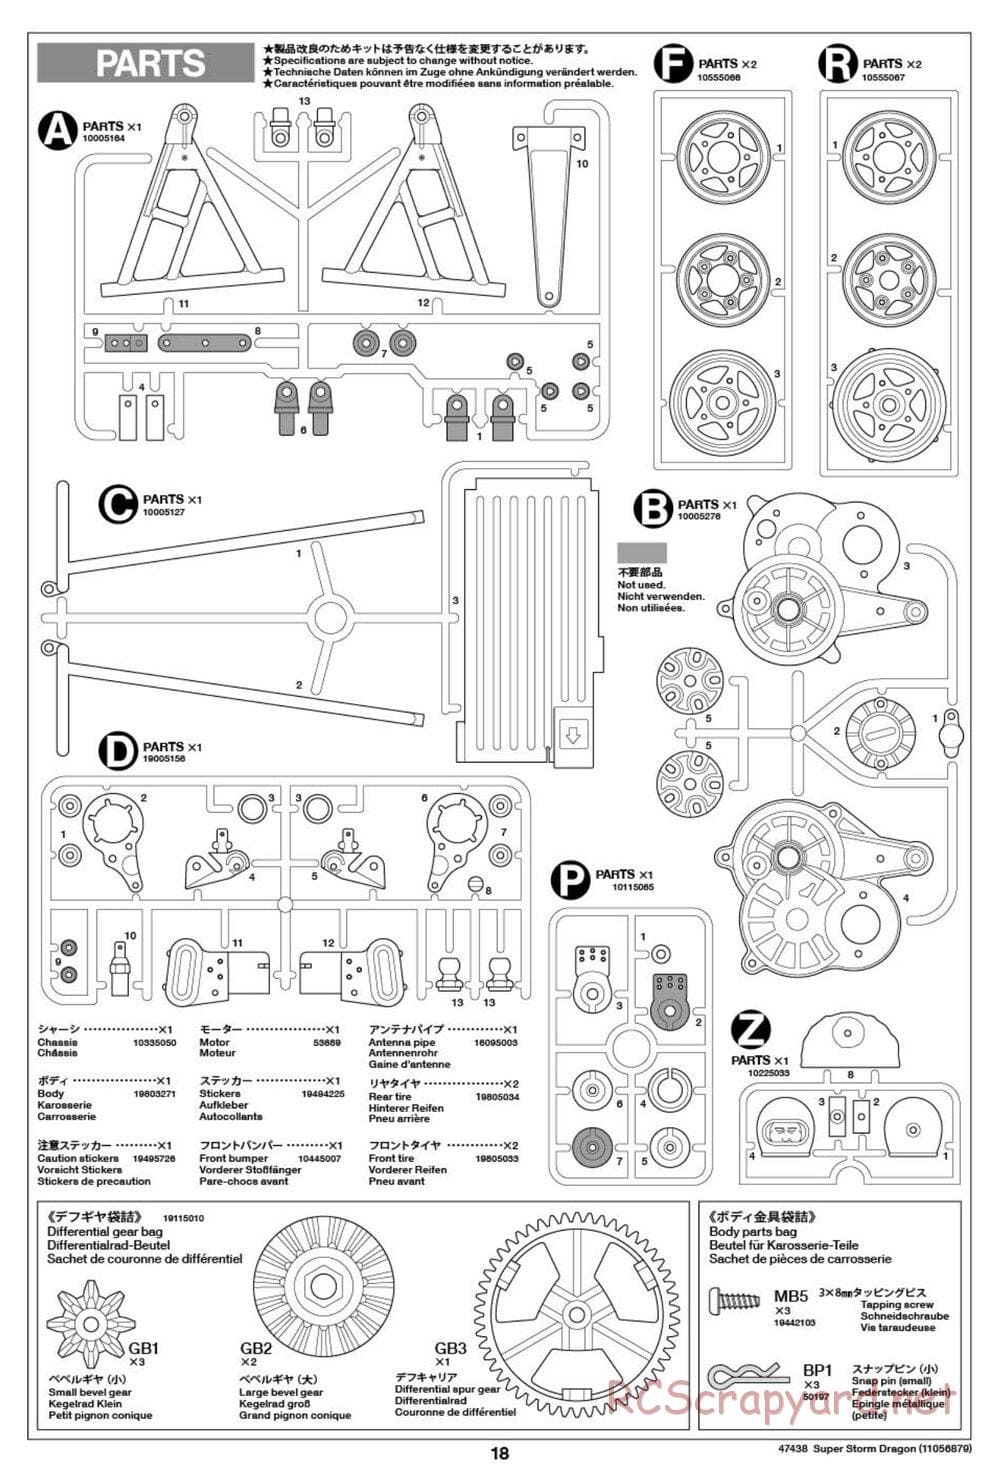 Tamiya - Super Storm Dragon Chassis - Manual - Page 18